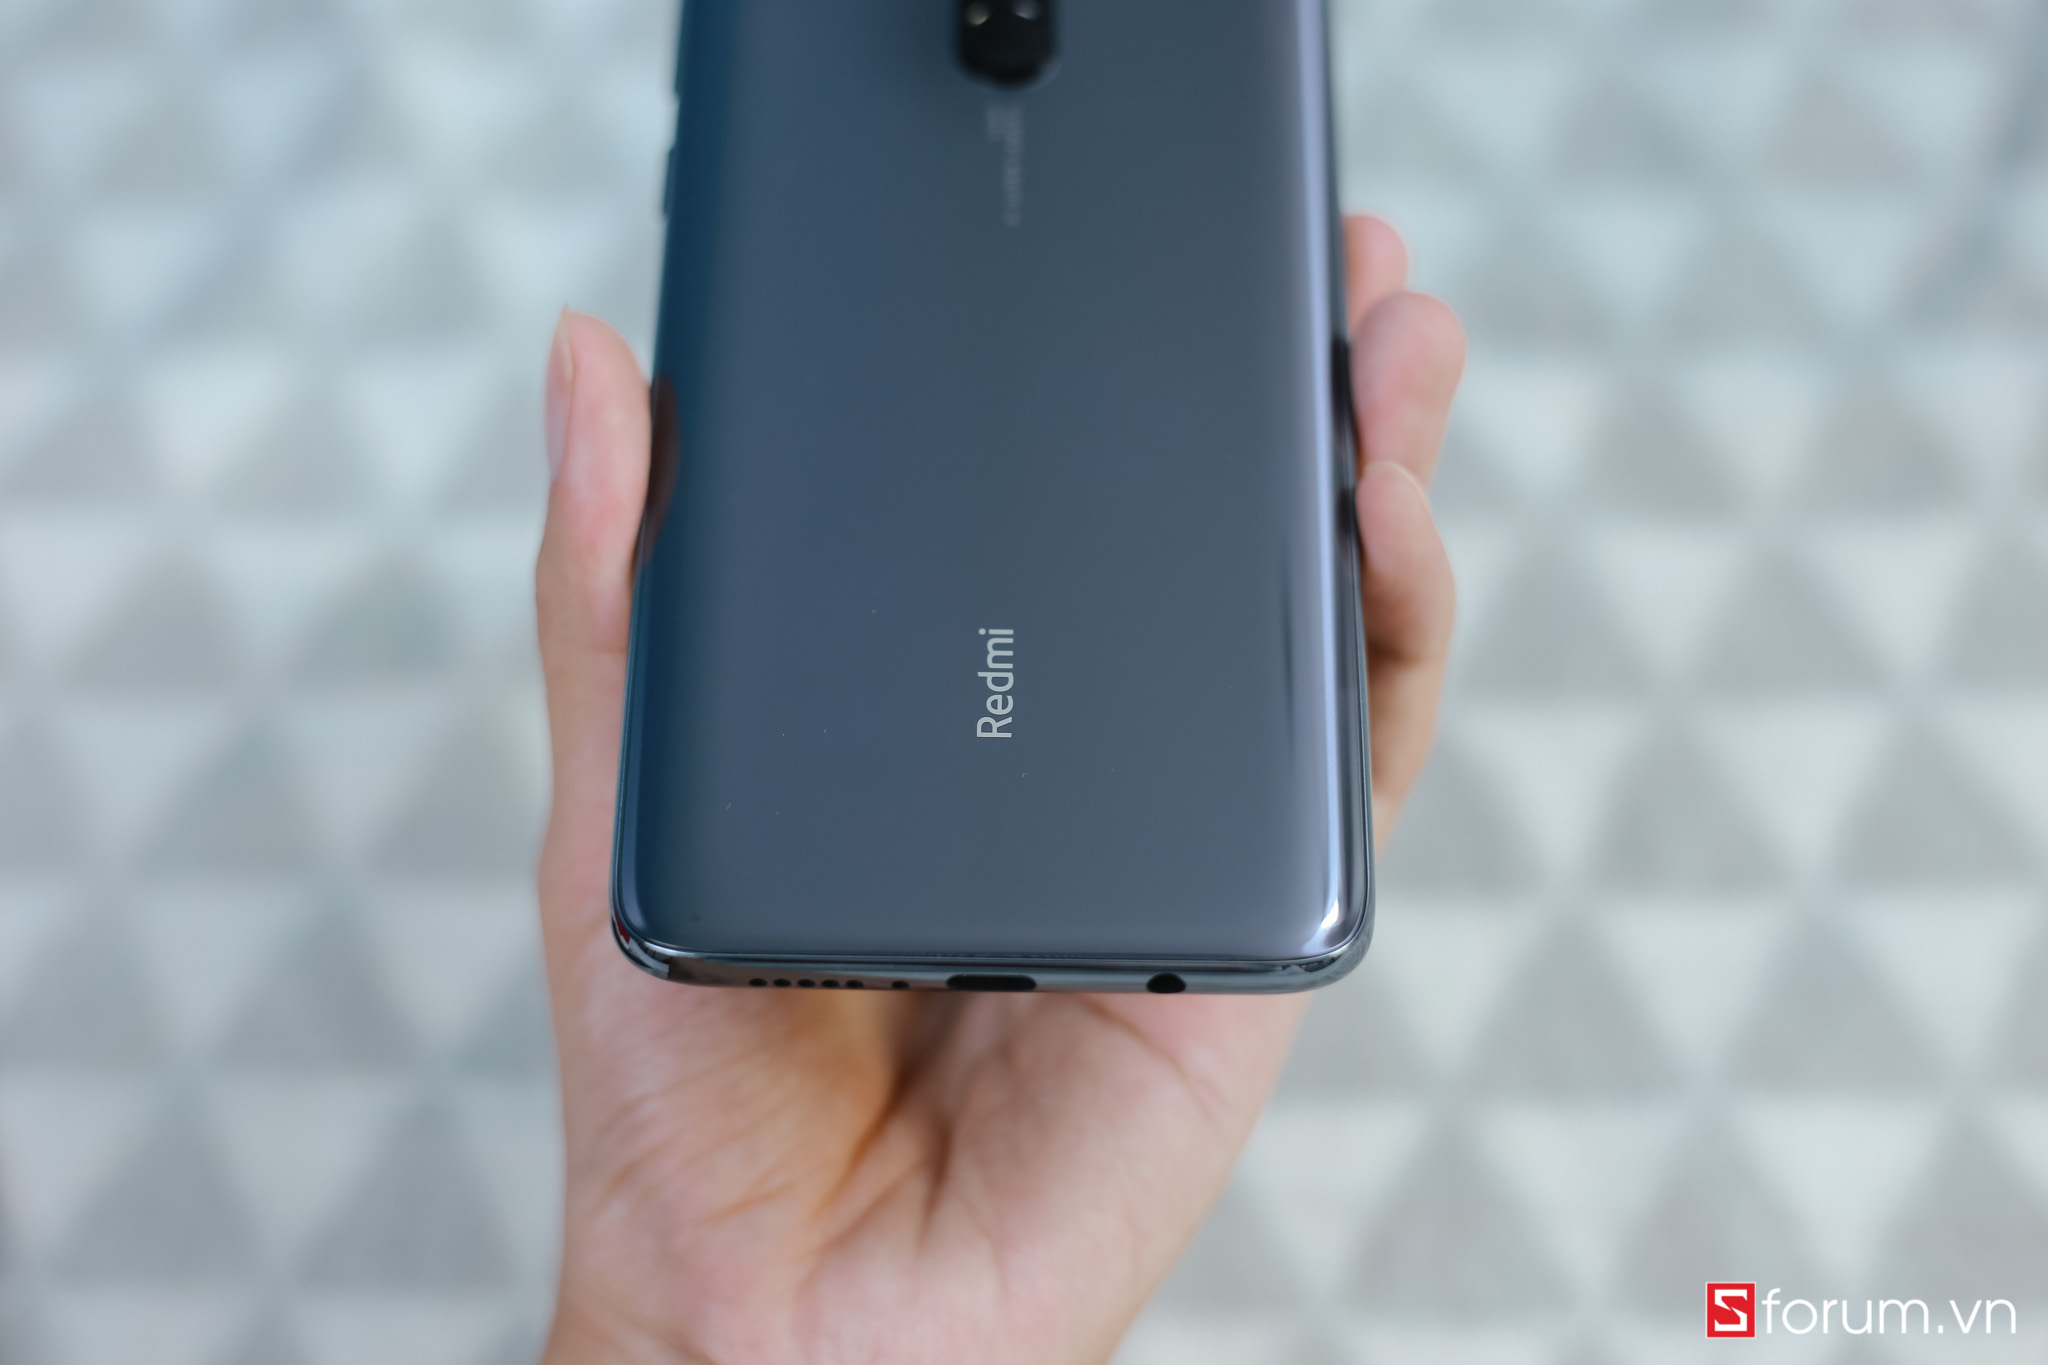 Sforum - Trang thông tin công nghệ mới nhất IMG_9770 Trên tay Redmi Note 8 Pro đầu tiên tại VN: Thiết kế mới, camera 64MP 